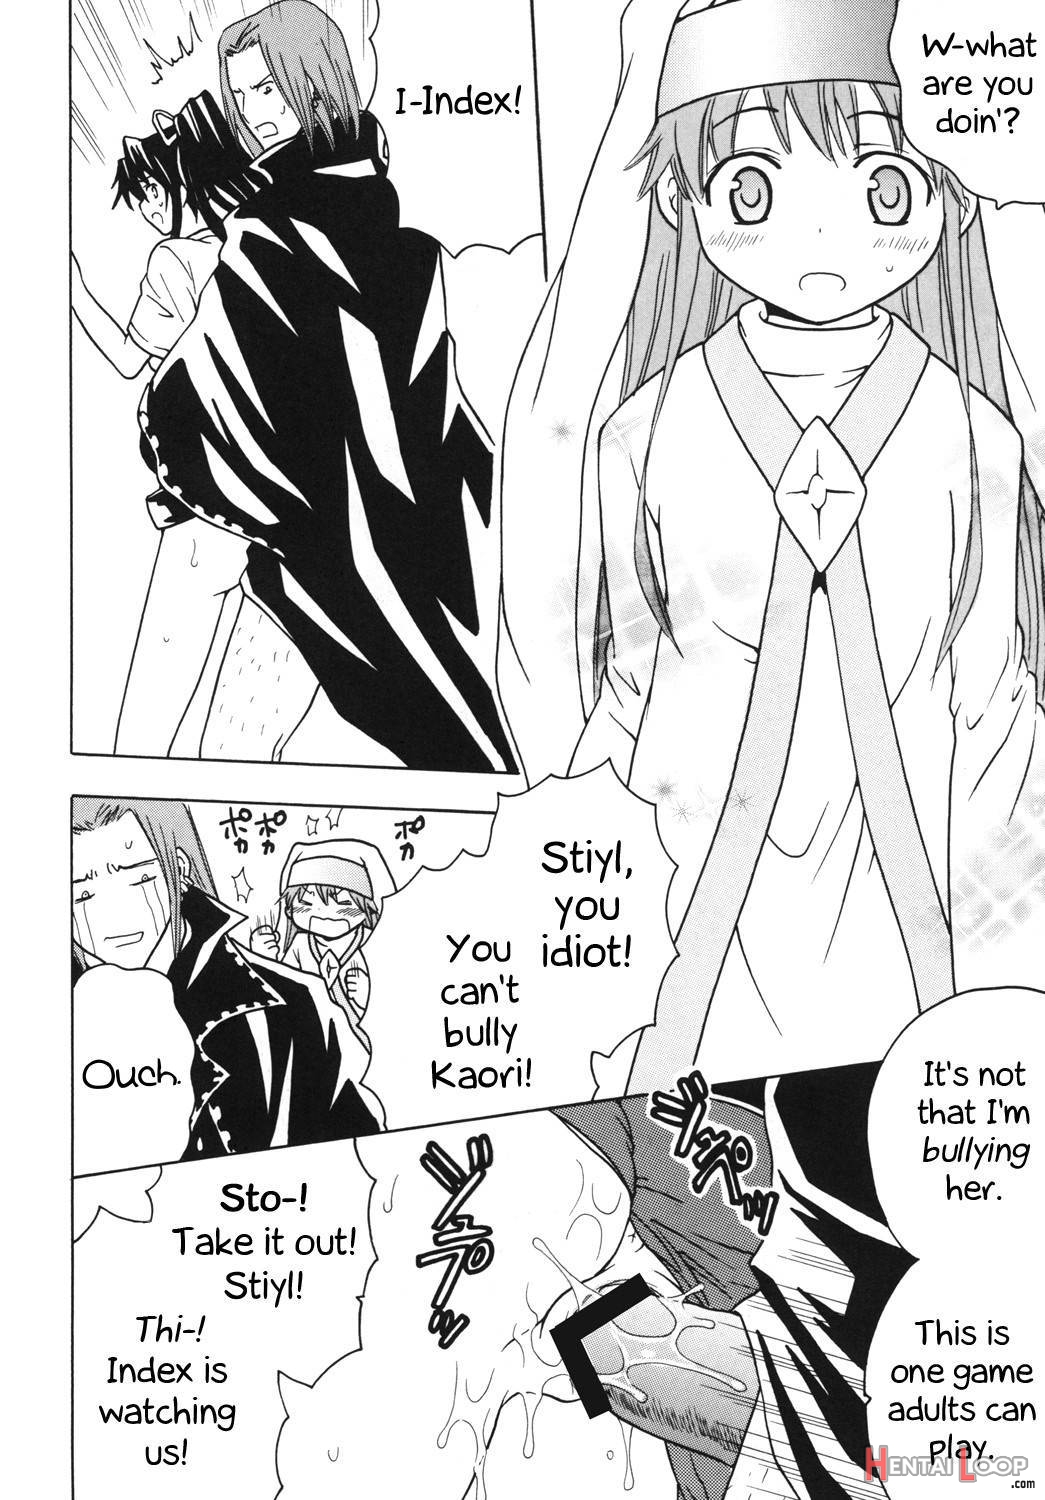 Toaru Otaku no Index #1 page 25